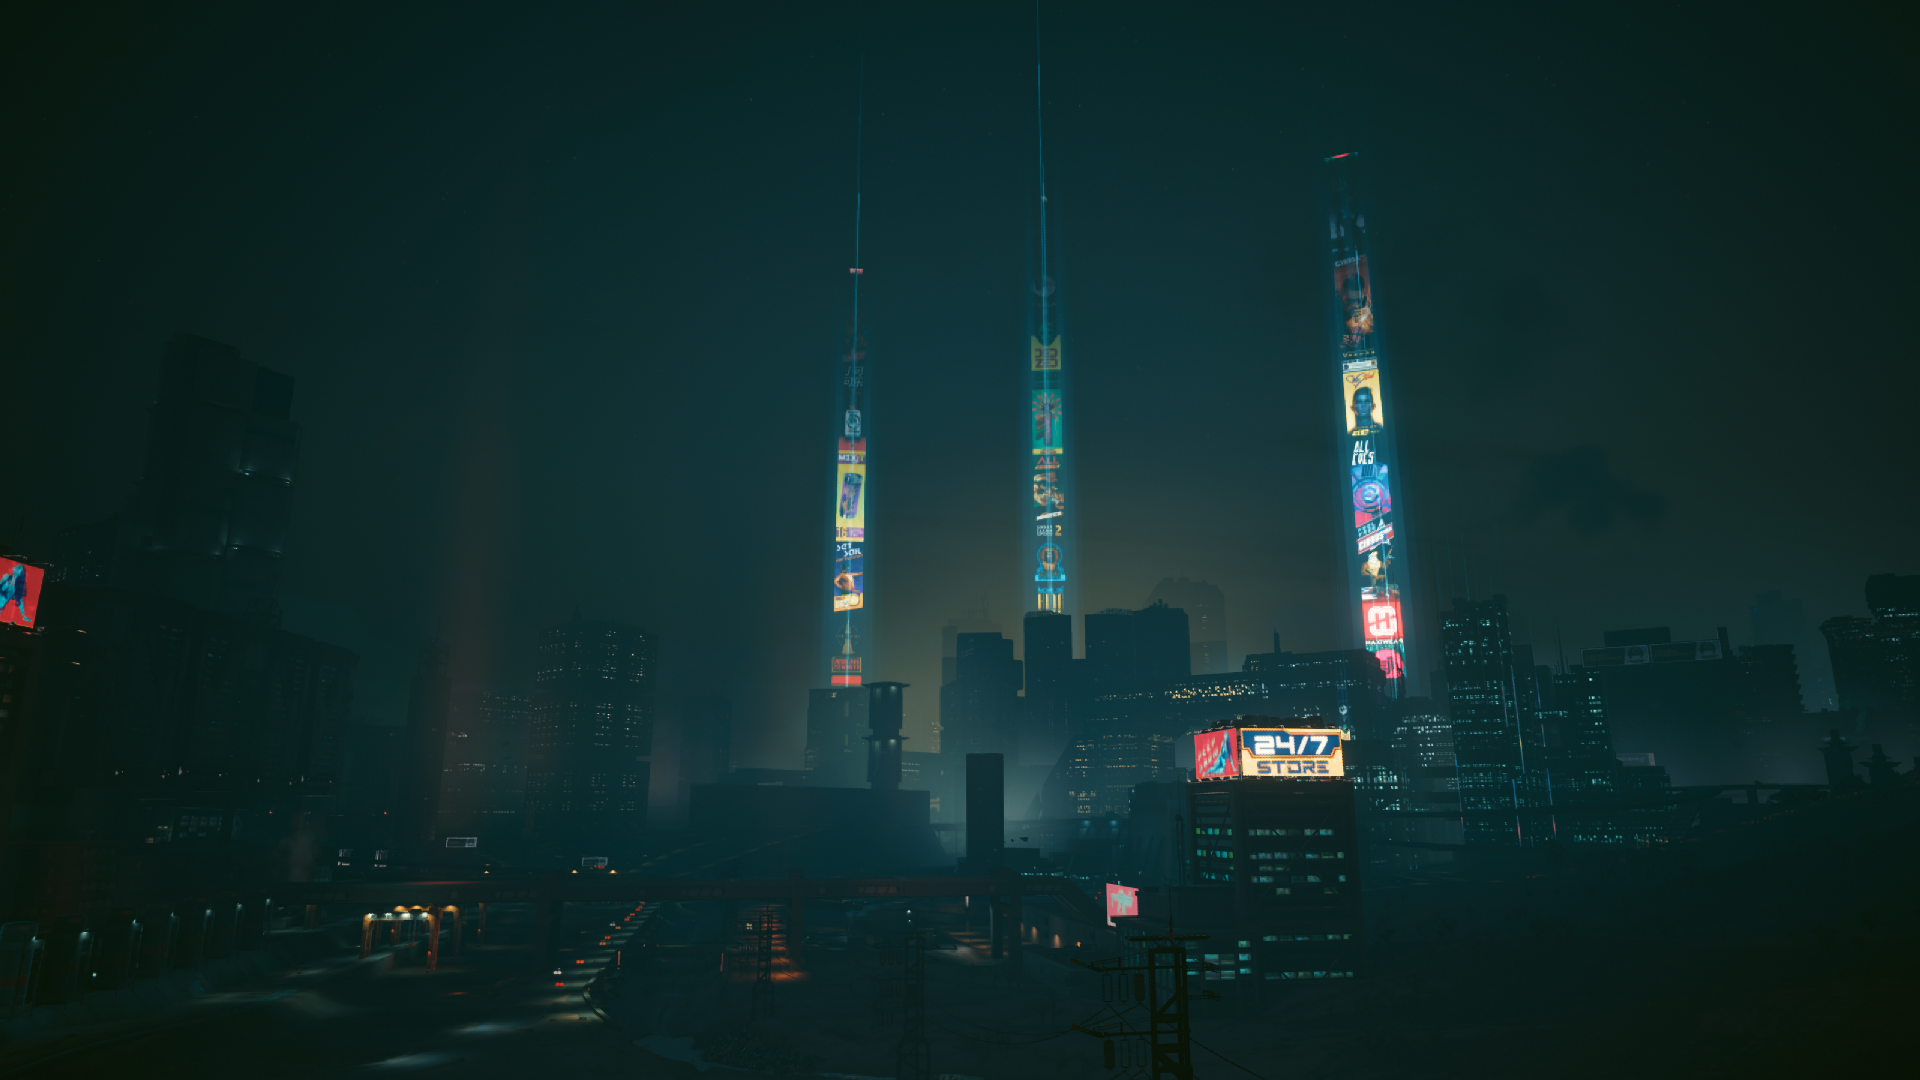 Cyberpunk 2077 Thành phố ánh sáng là một trong những video game đang được săn đón nhất hiện nay, với nghệ thuật đậm chất đô thị và những khung cảnh hoành tráng hấp dẫn. Hãy tận hưởng kiệt tác này và đắm chìm trong một thế giới giả tưởng đầy những cảm xúc thăng hoa.